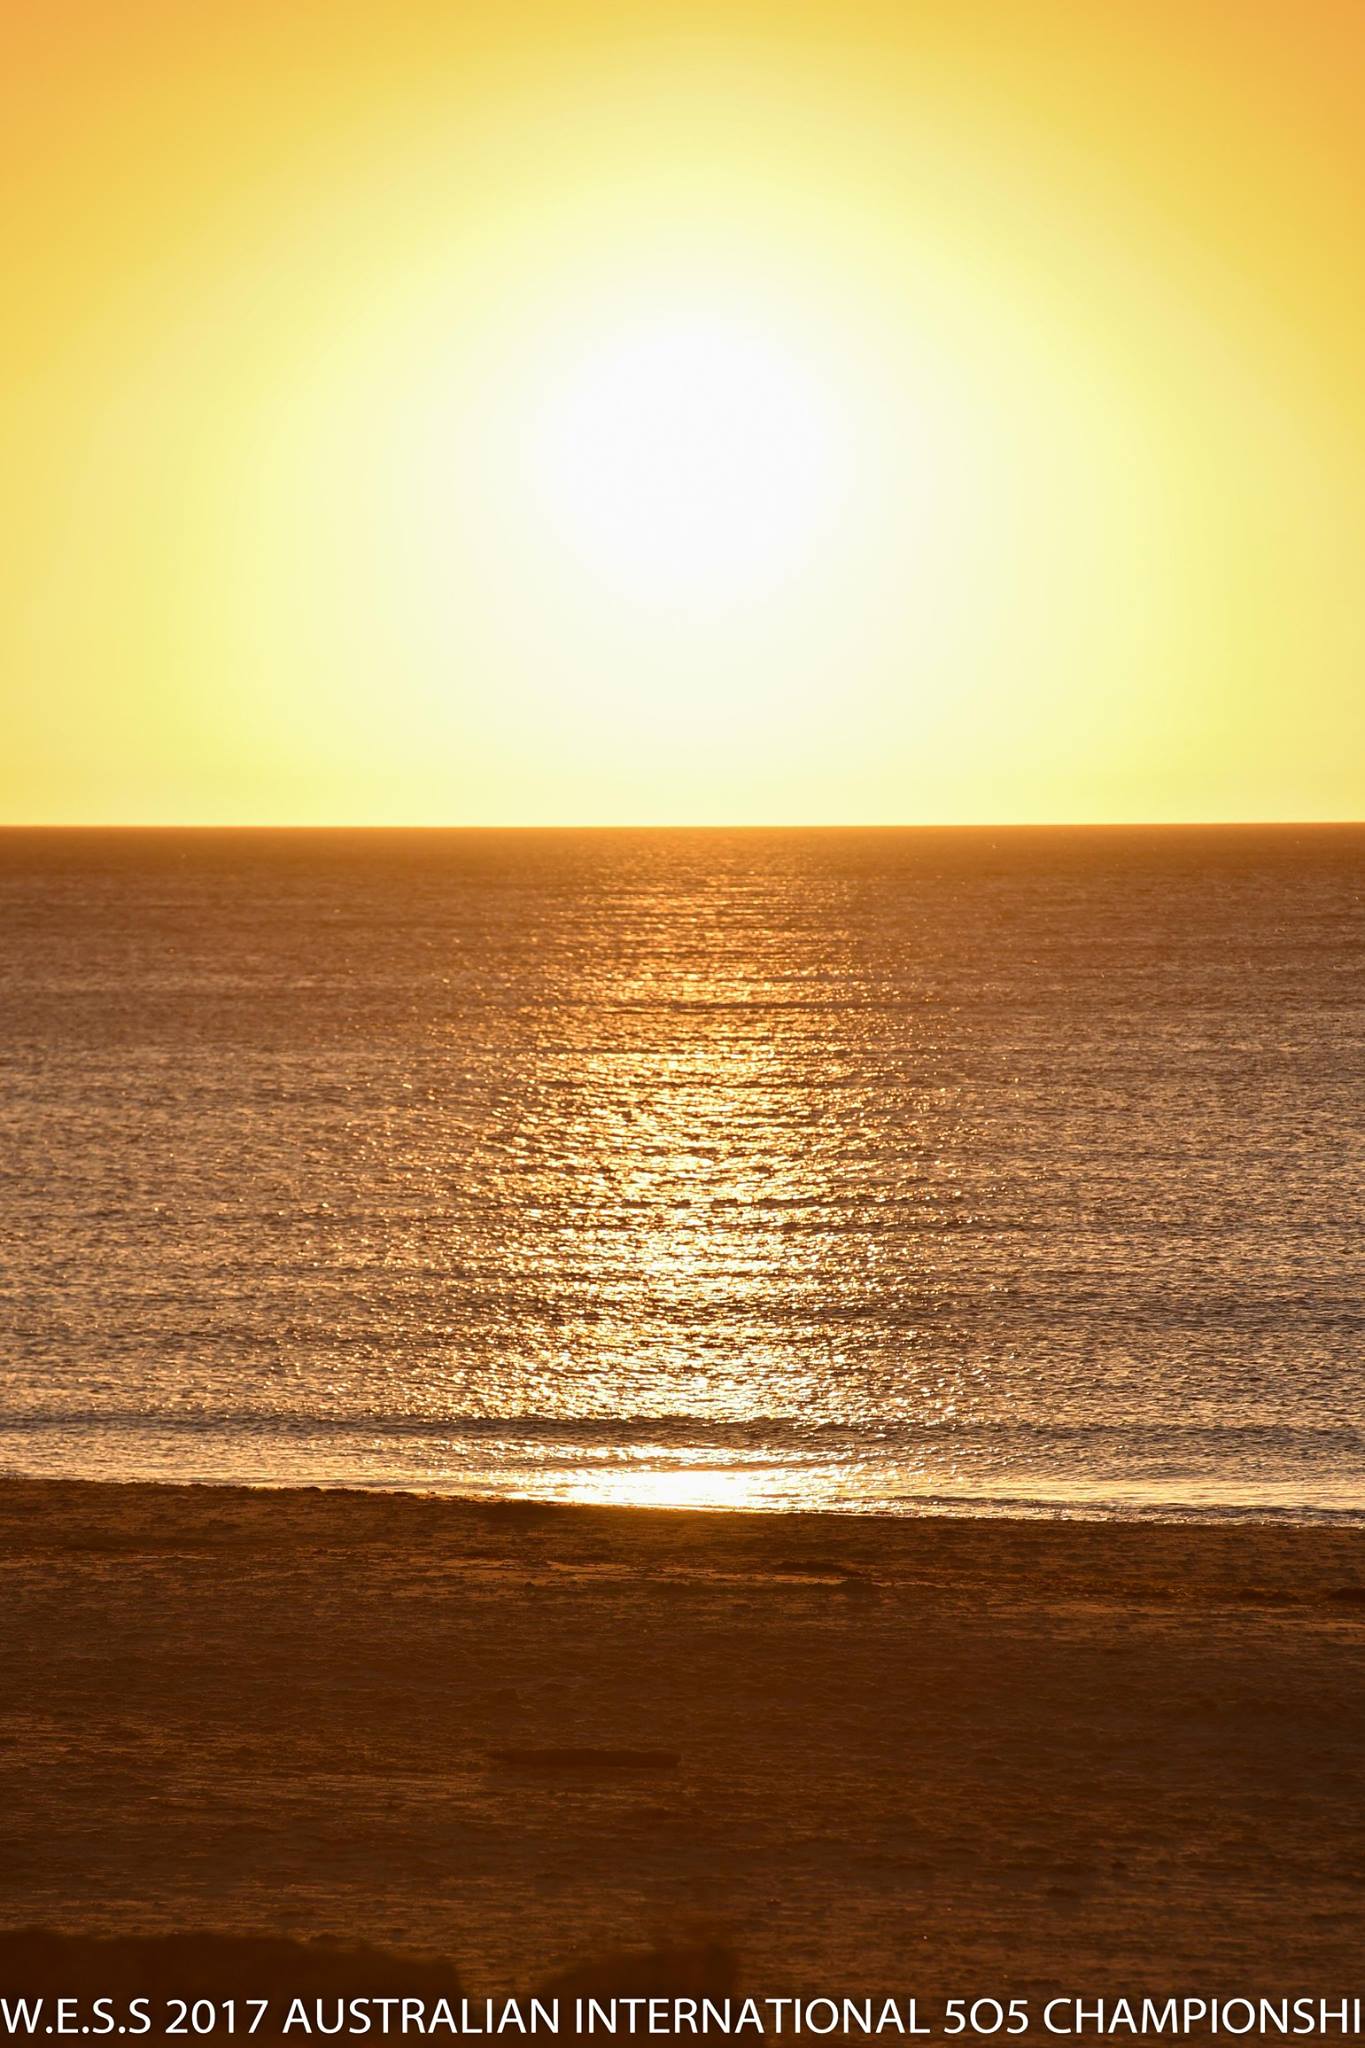 A Seacliff sunset — doesn't get much better. Photos: Christophe Favreau